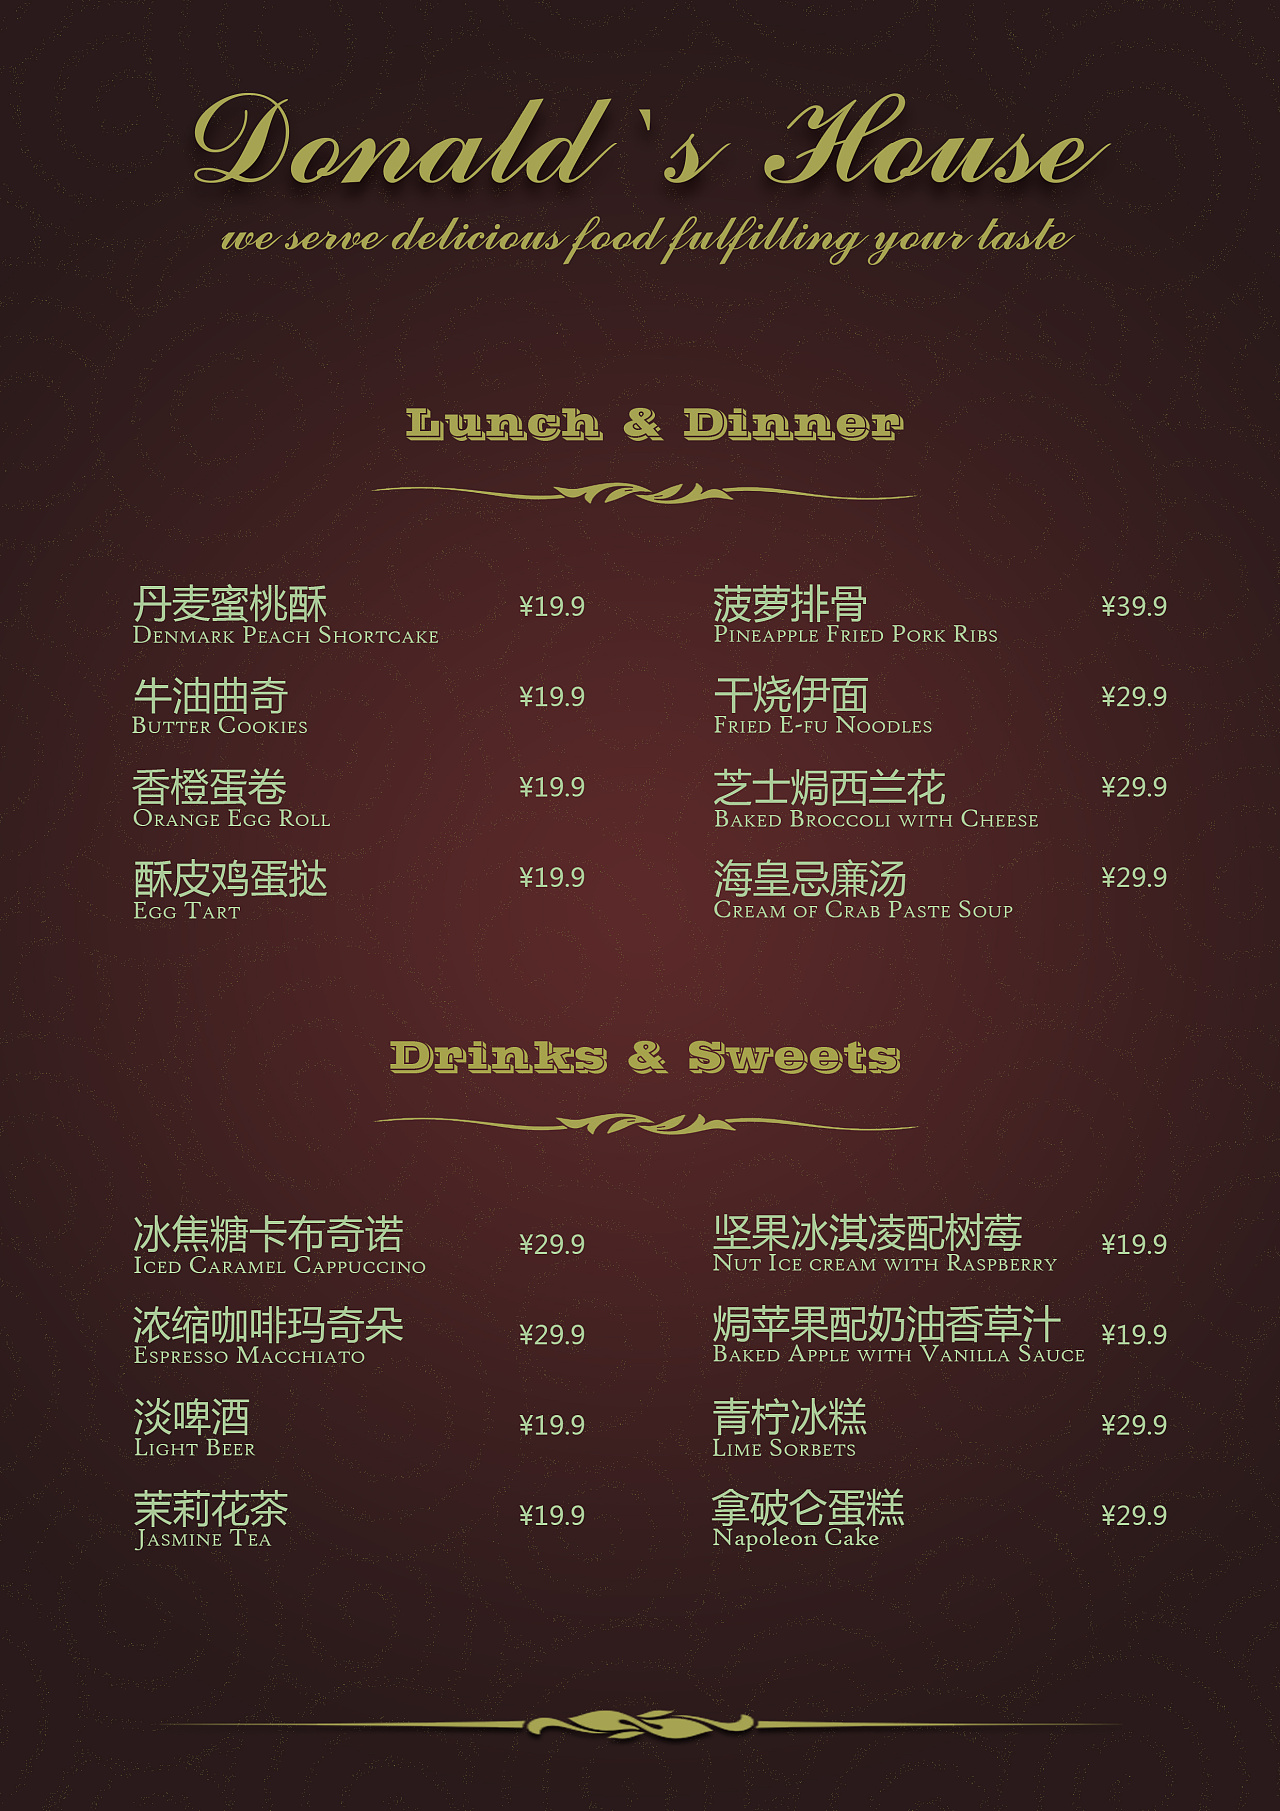 政协俱乐部西餐厅菜单图片